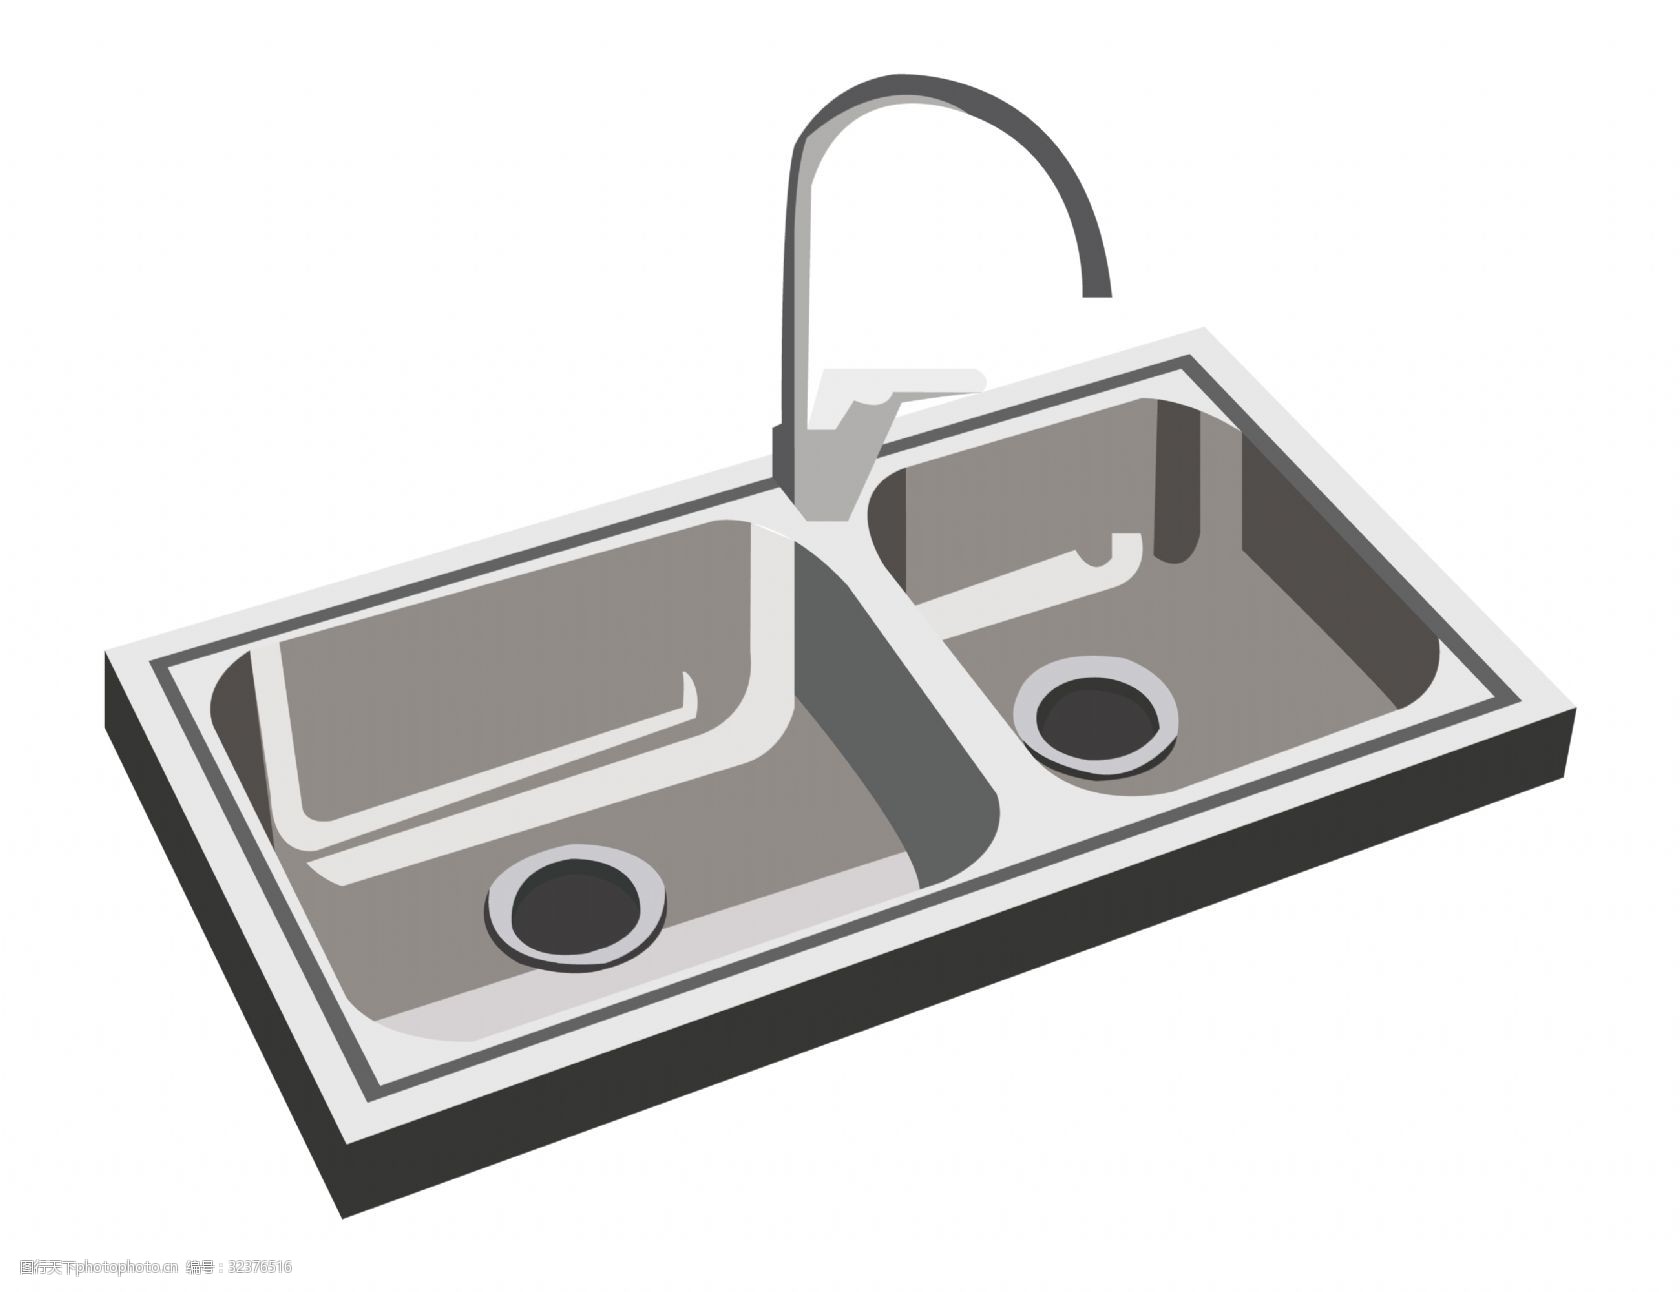 关键词:厨具水槽卡通插画 不锈钢水槽 卡通插画 厨具插画 厨房用品 锅